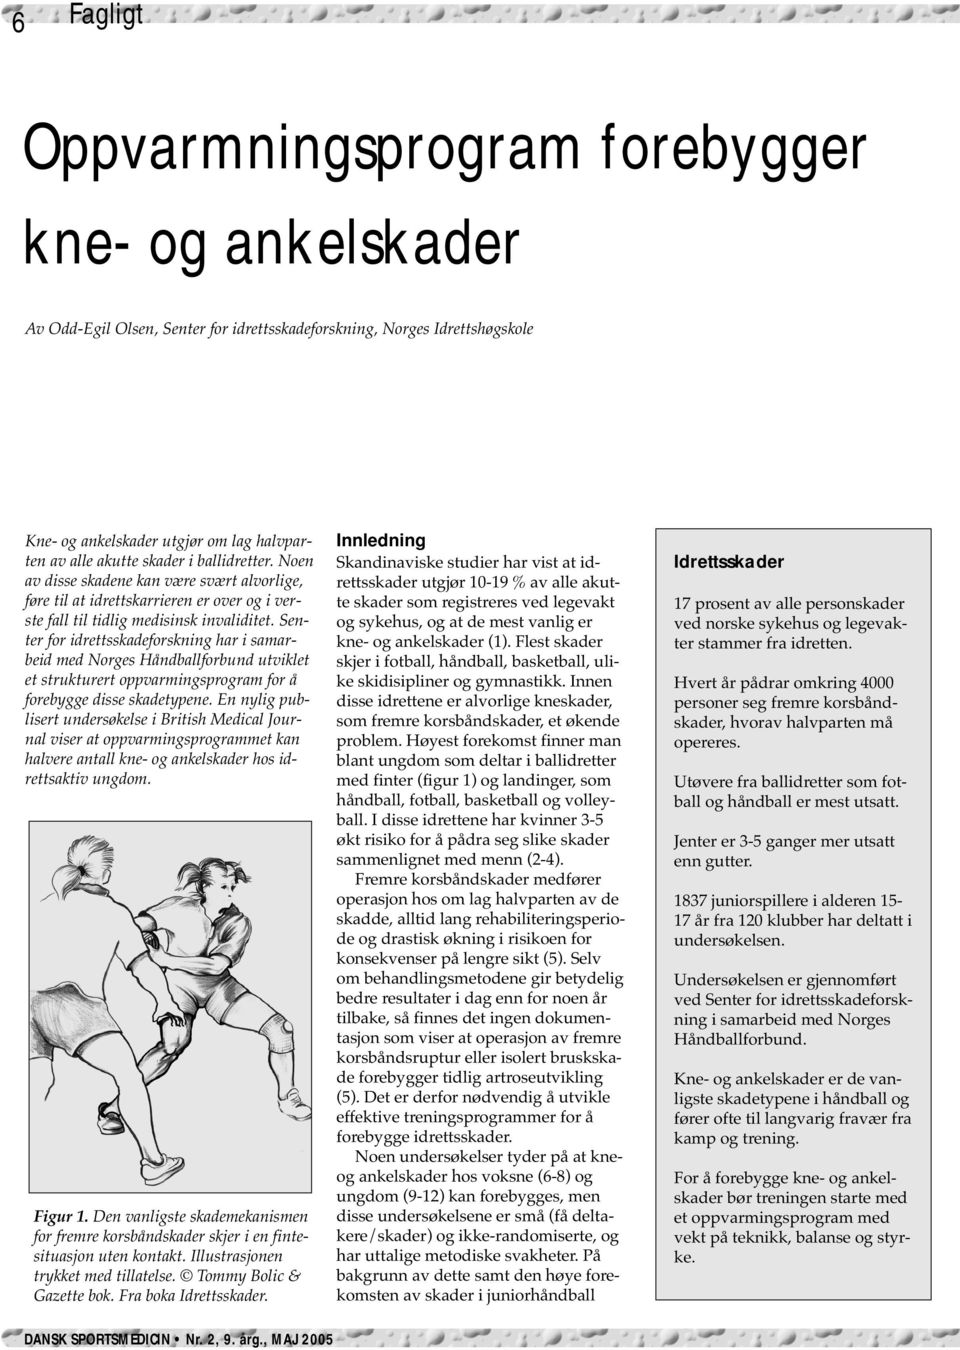 Senter for idrettsskadeforskning har i samarbeid med Norges Håndballforbund utviklet et strukturert oppvarmingsprogram for å forebygge disse skadetypene.